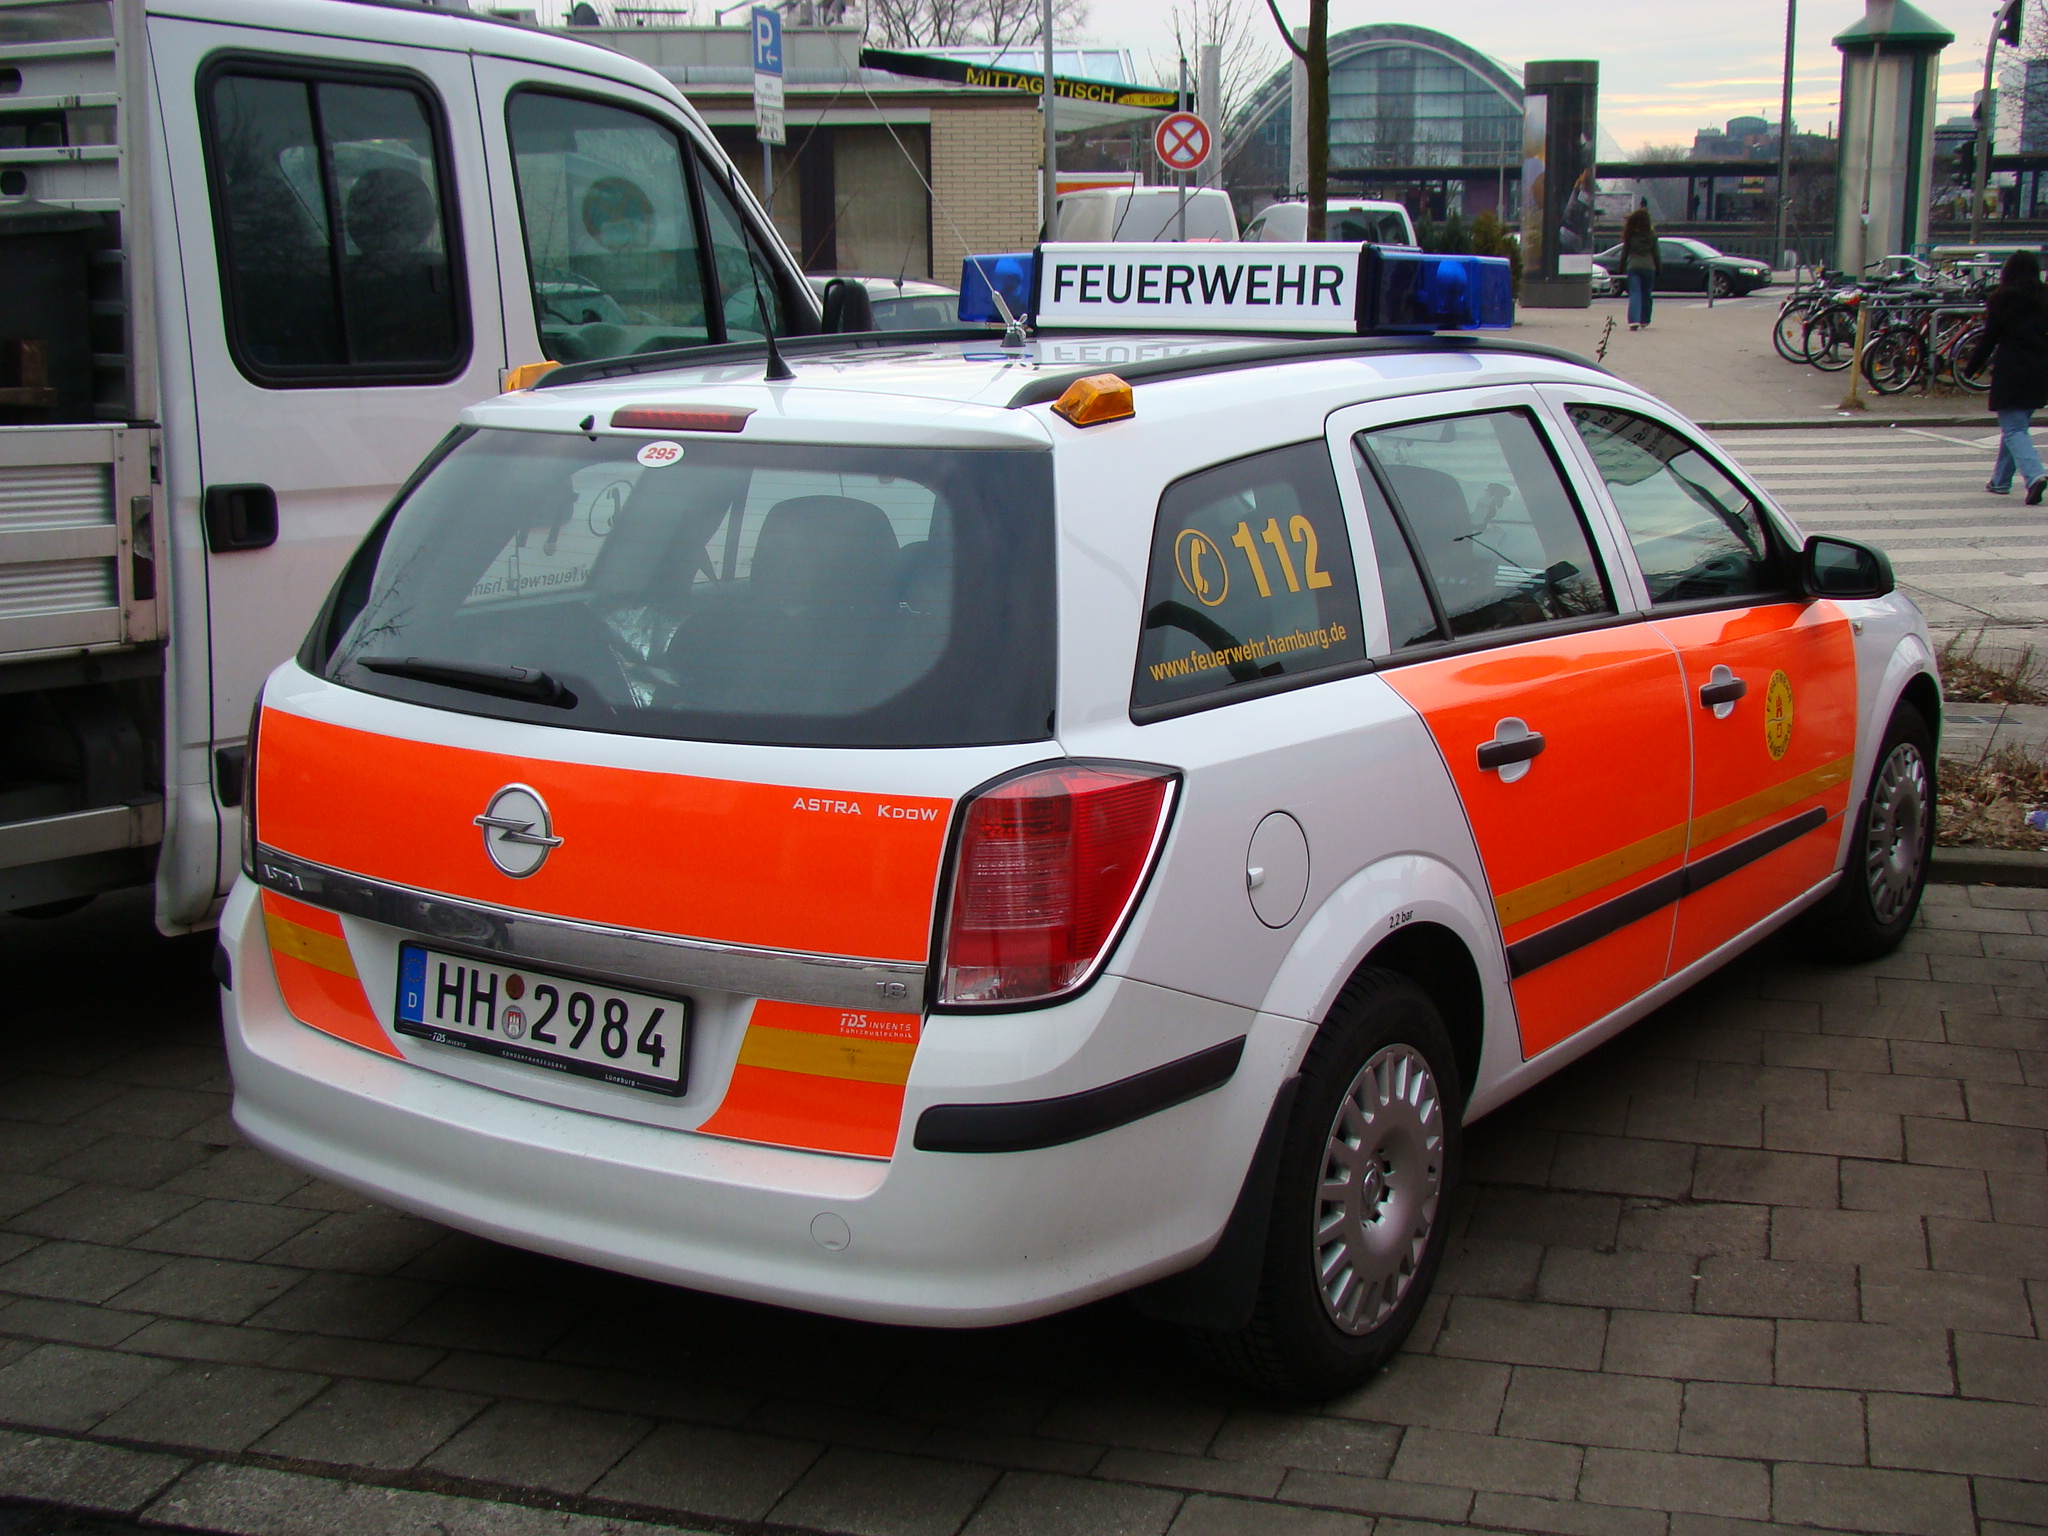 ELW Freiwillige Feuerwehr - Opel Astra Caravan | Flickr - Photo ...